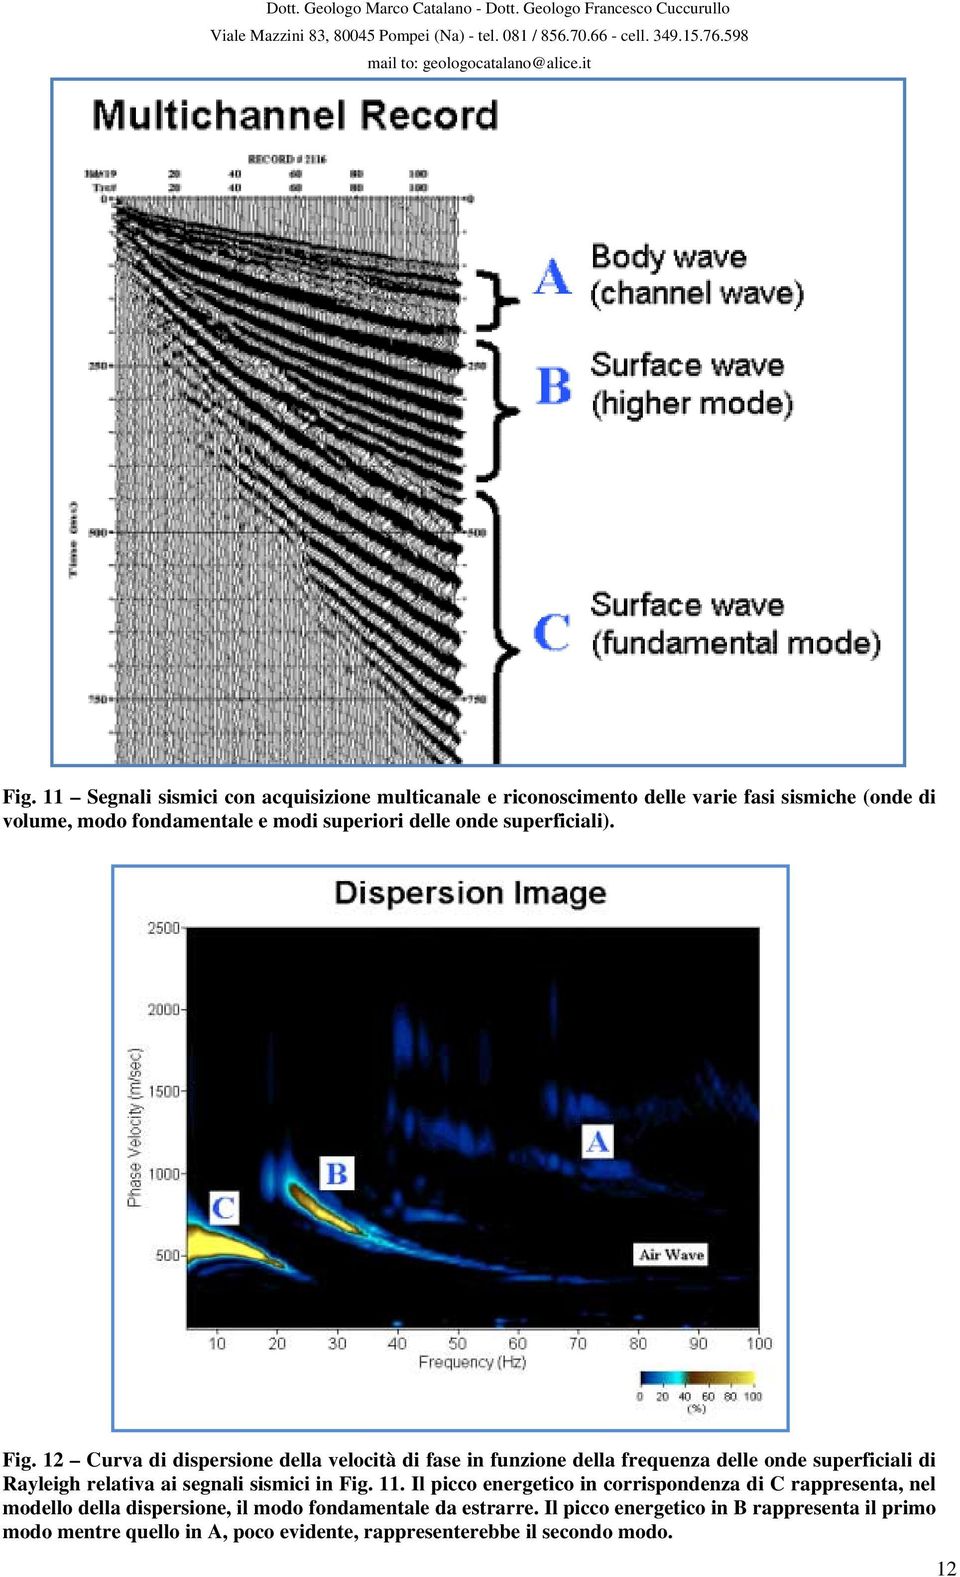 12 Curva di dispersione della velocità di fase in funzione della frequenza delle onde superficiali di Rayleigh relativa ai segnali sismici in